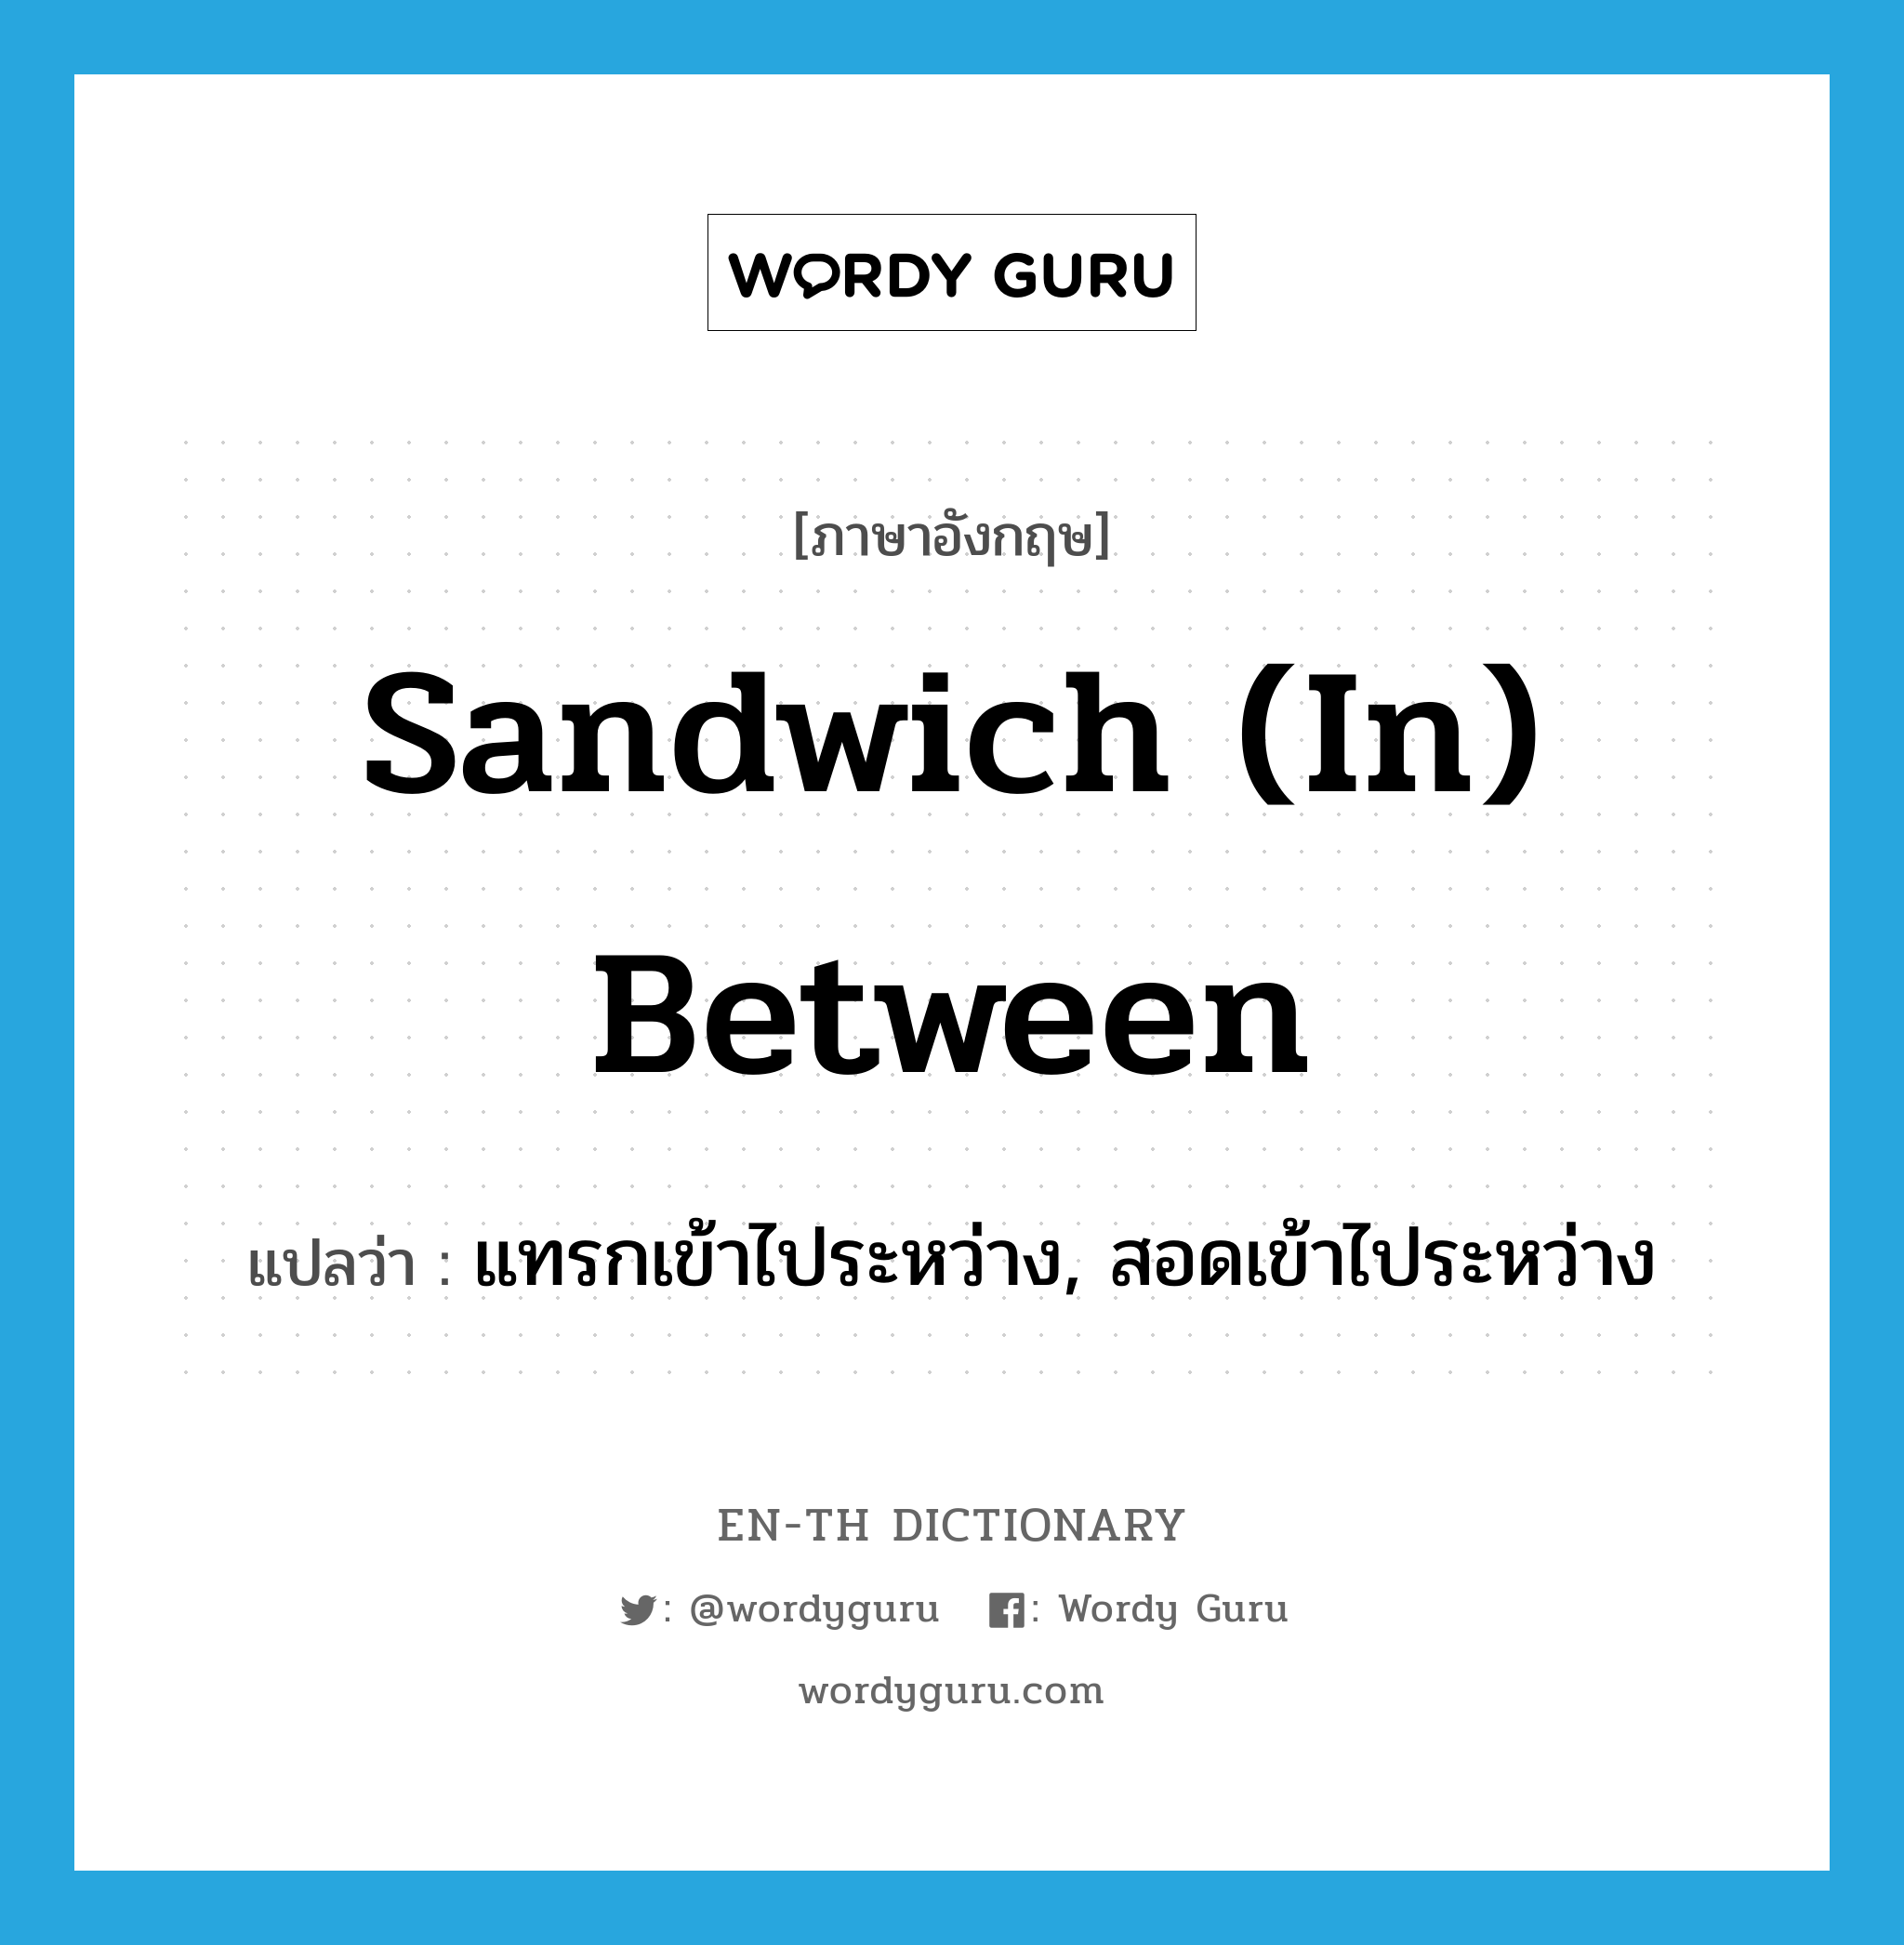 แทรกเข้าไประหว่าง, สอดเข้าไประหว่าง ภาษาอังกฤษ?, คำศัพท์ภาษาอังกฤษ แทรกเข้าไประหว่าง, สอดเข้าไประหว่าง แปลว่า sandwich (in) between ประเภท PHRV หมวด PHRV